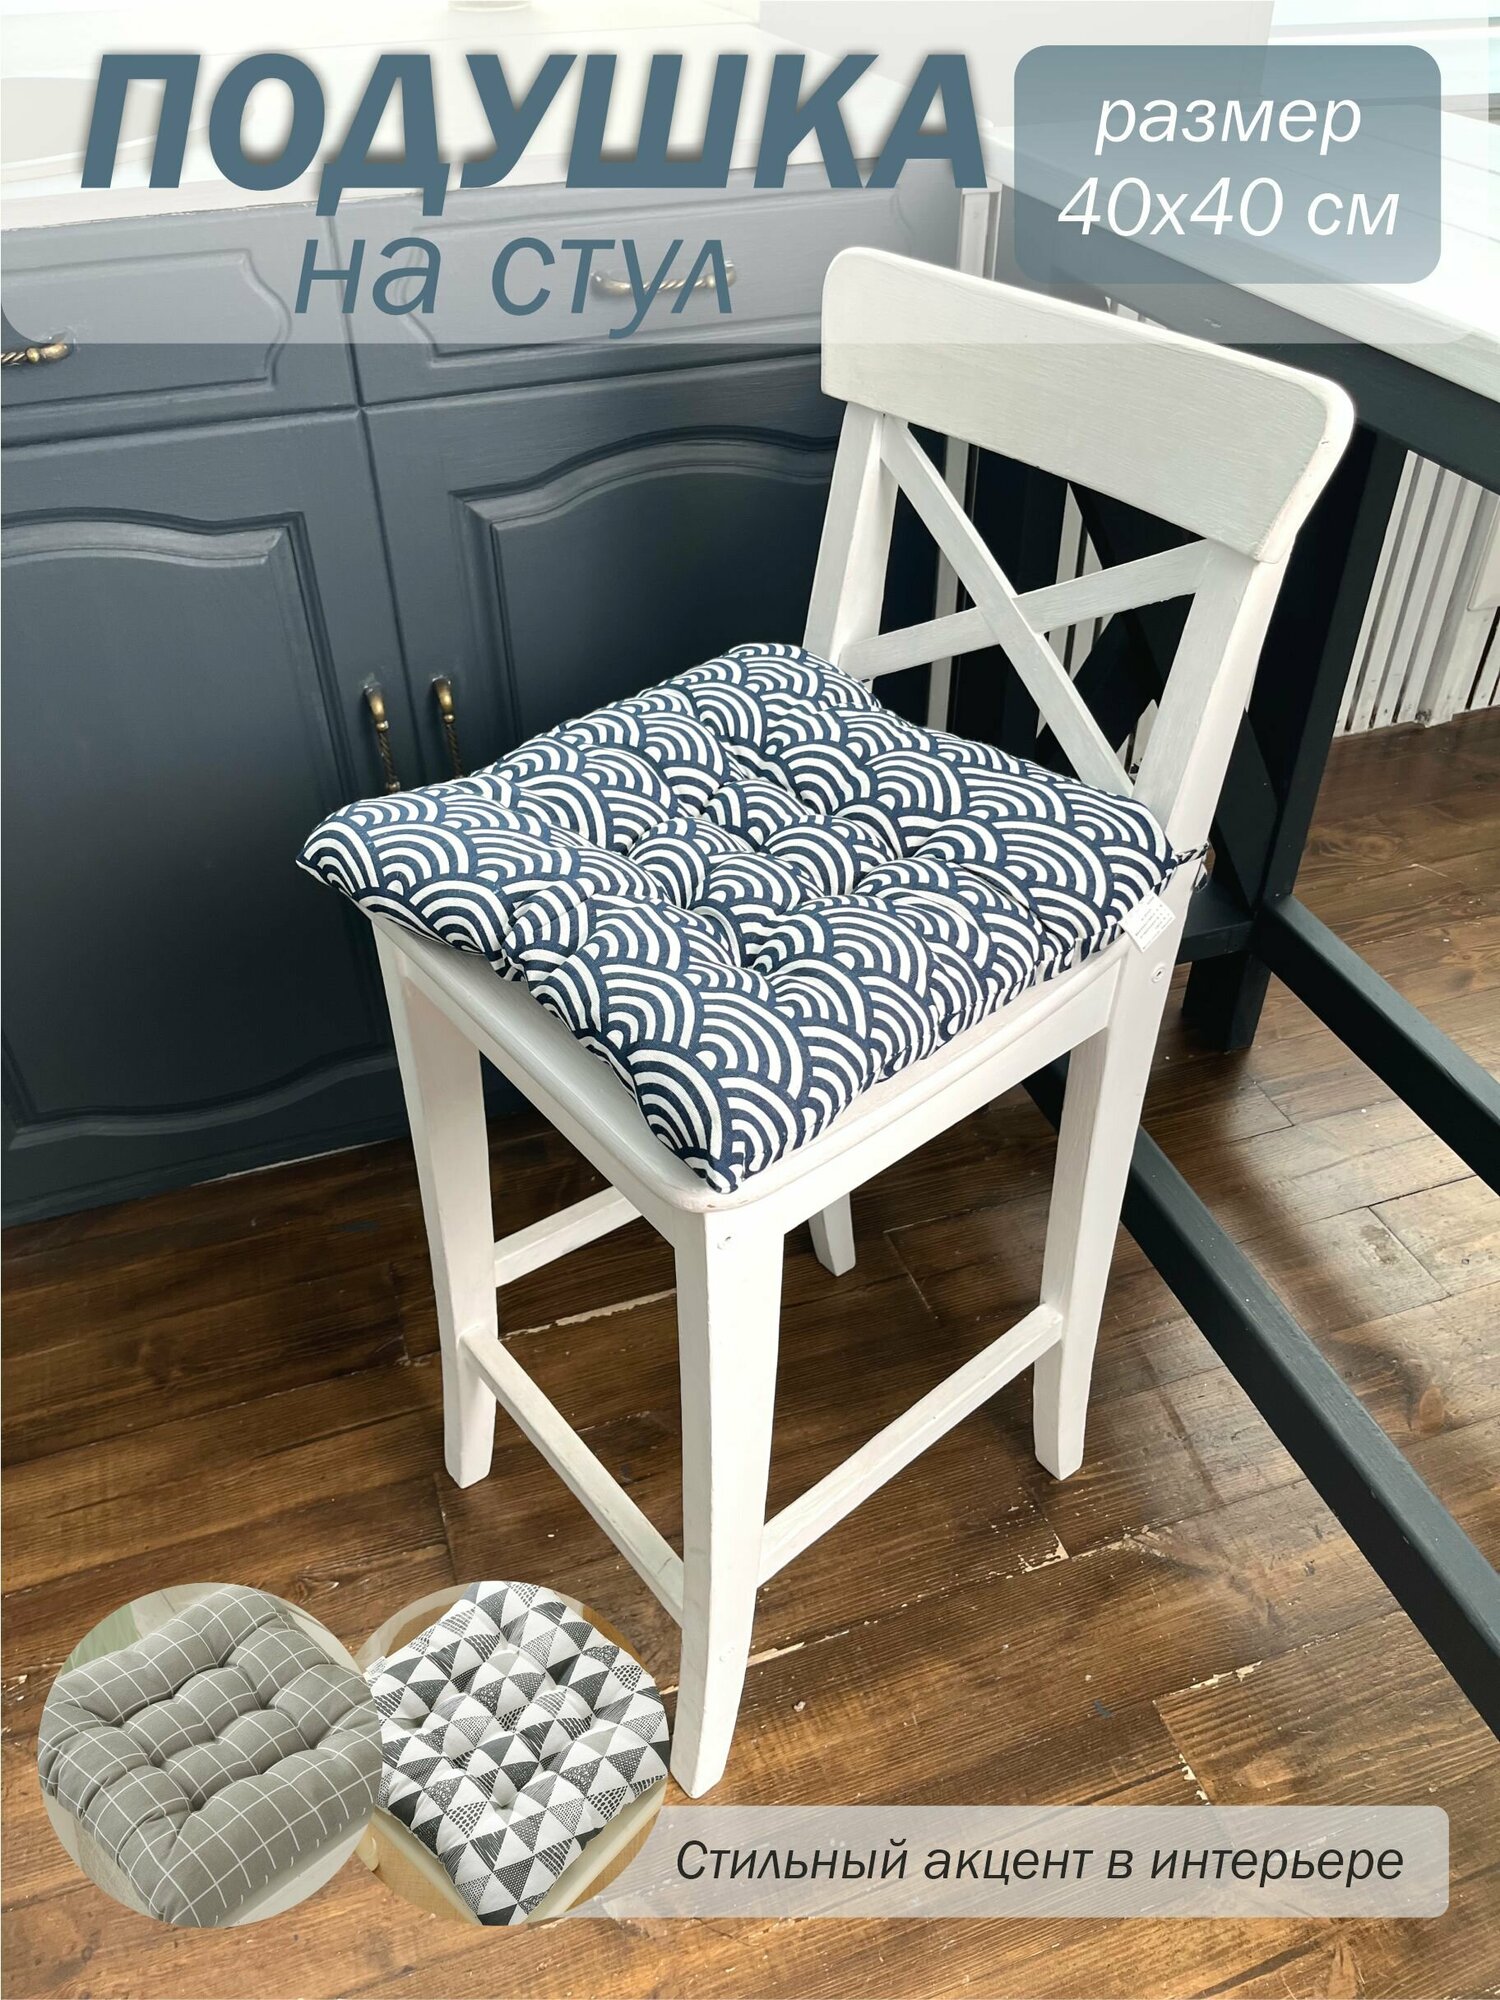 Подушка для стула с завязками / подушка на стул квадратная 40 на 40 см хлопок